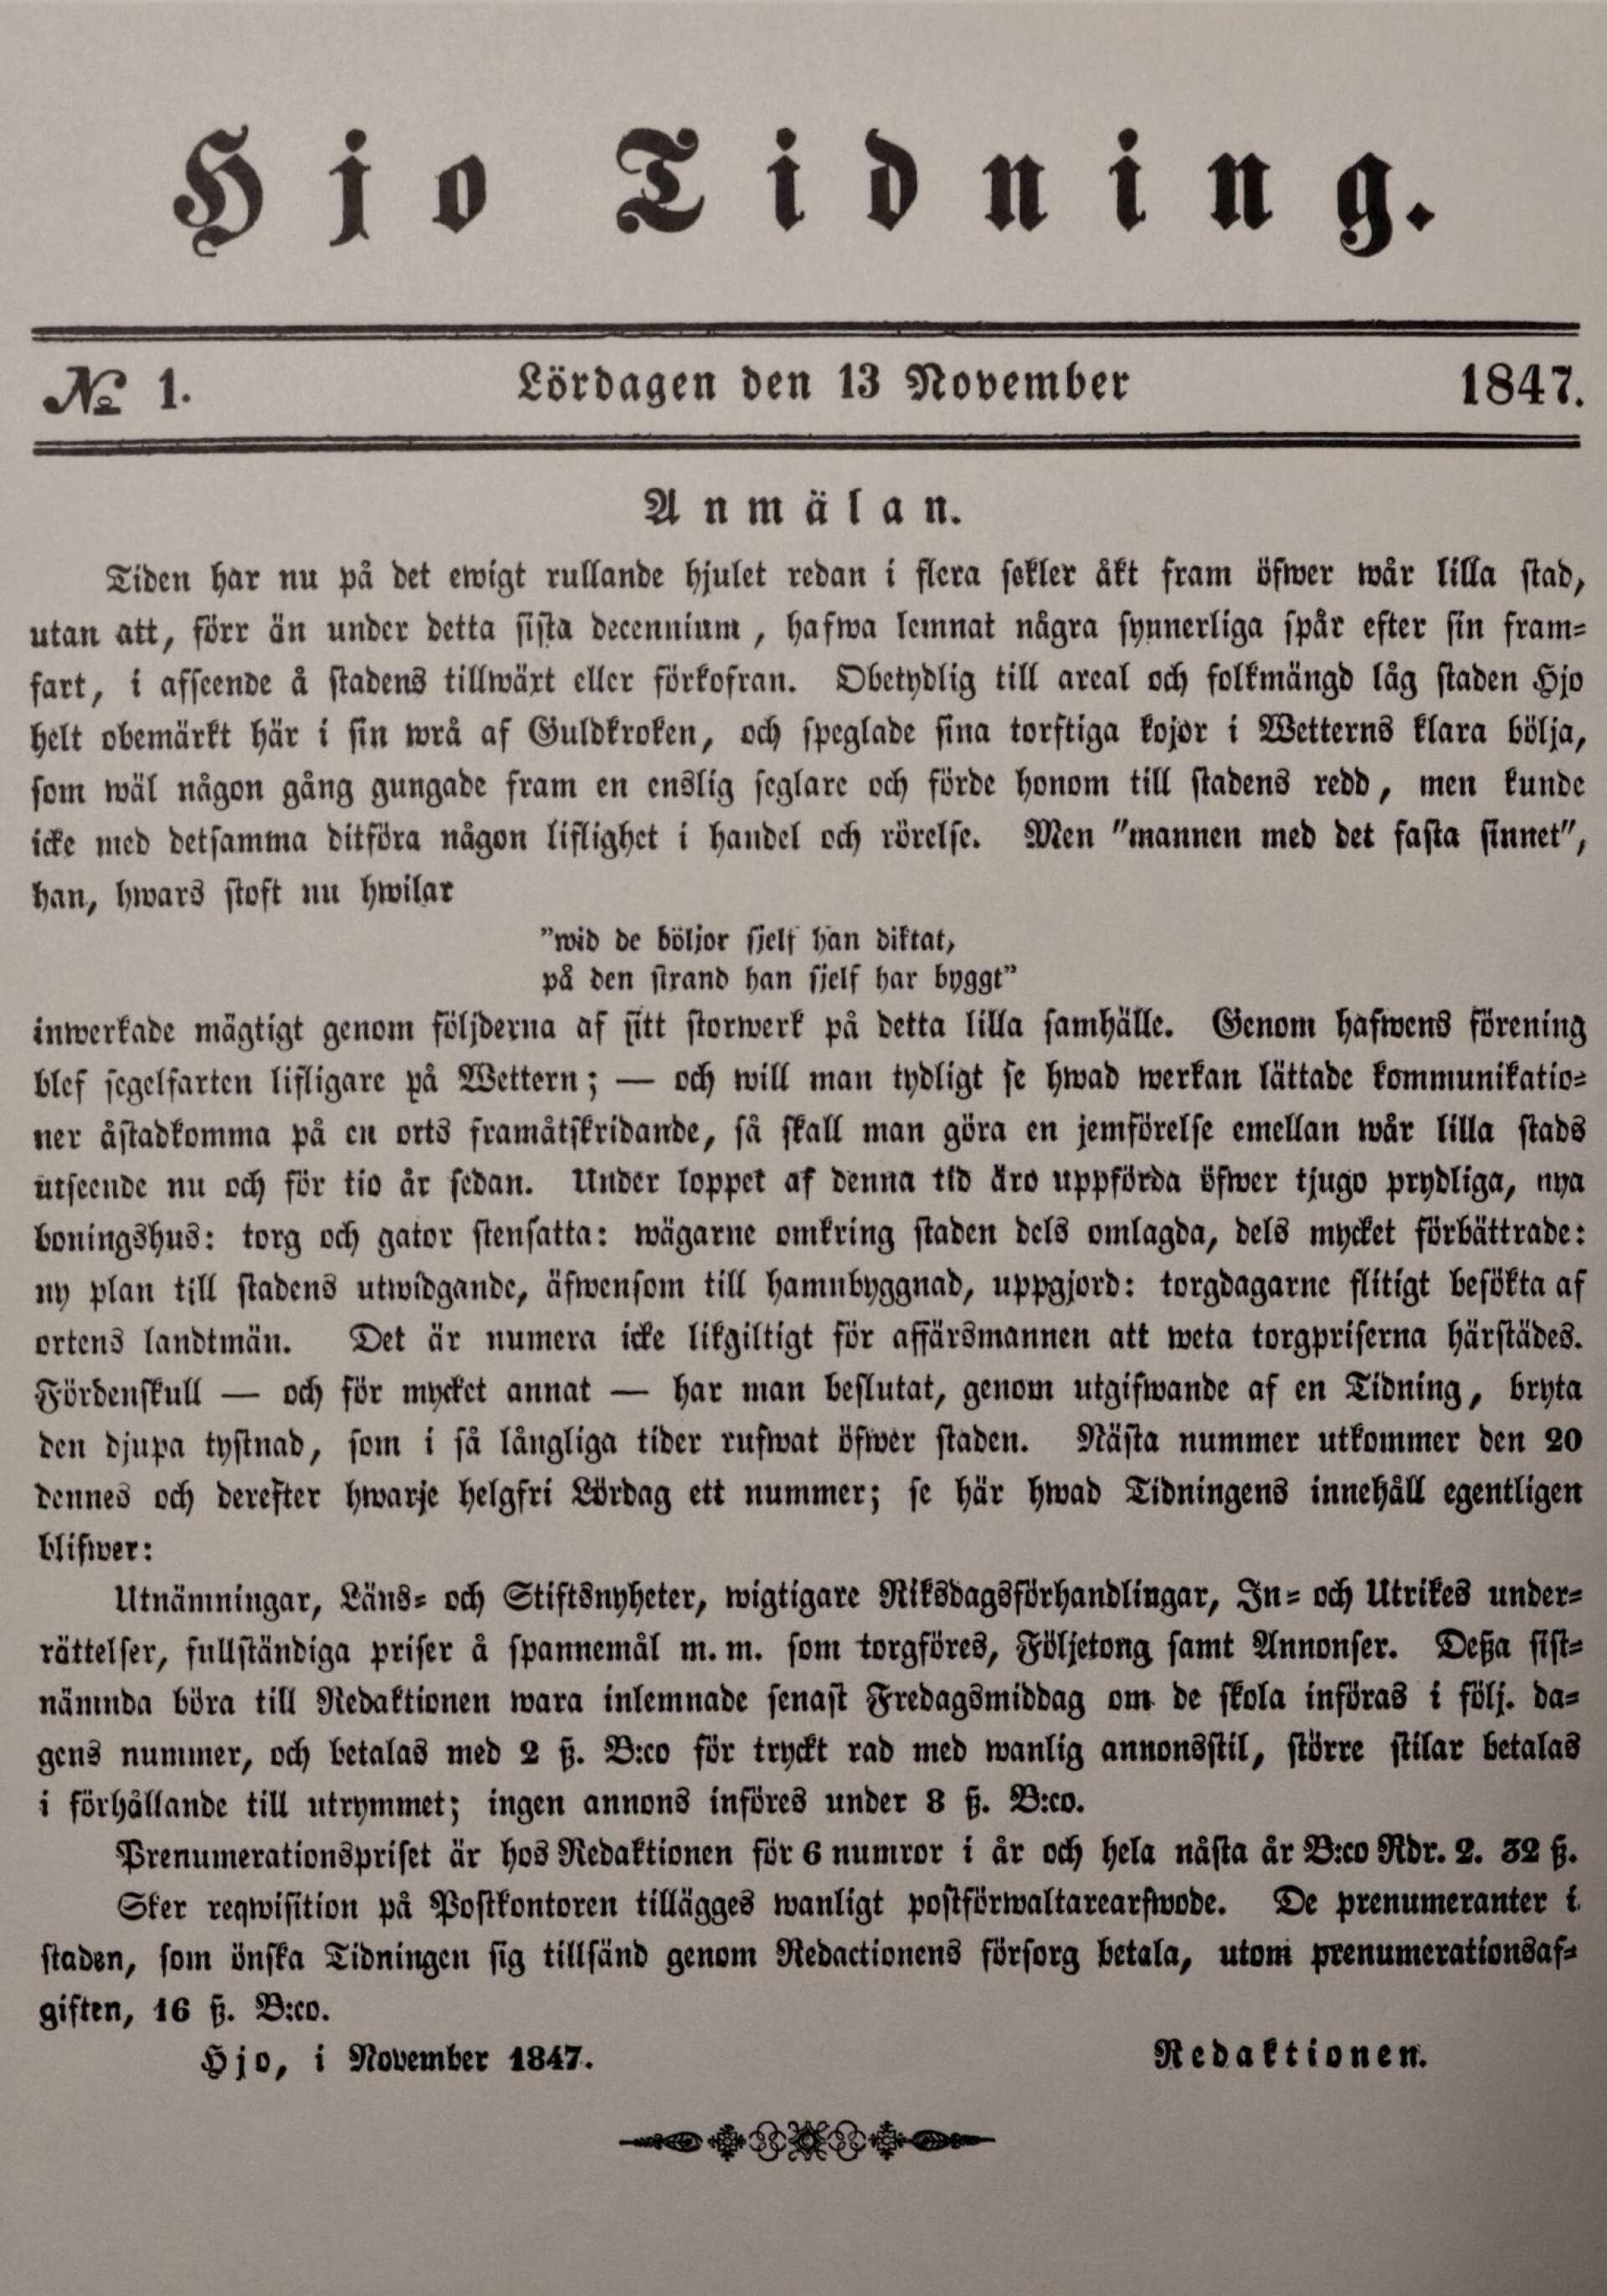 No 1. Första numret av Hjo Tidning daterat lördag 13 november 1847.